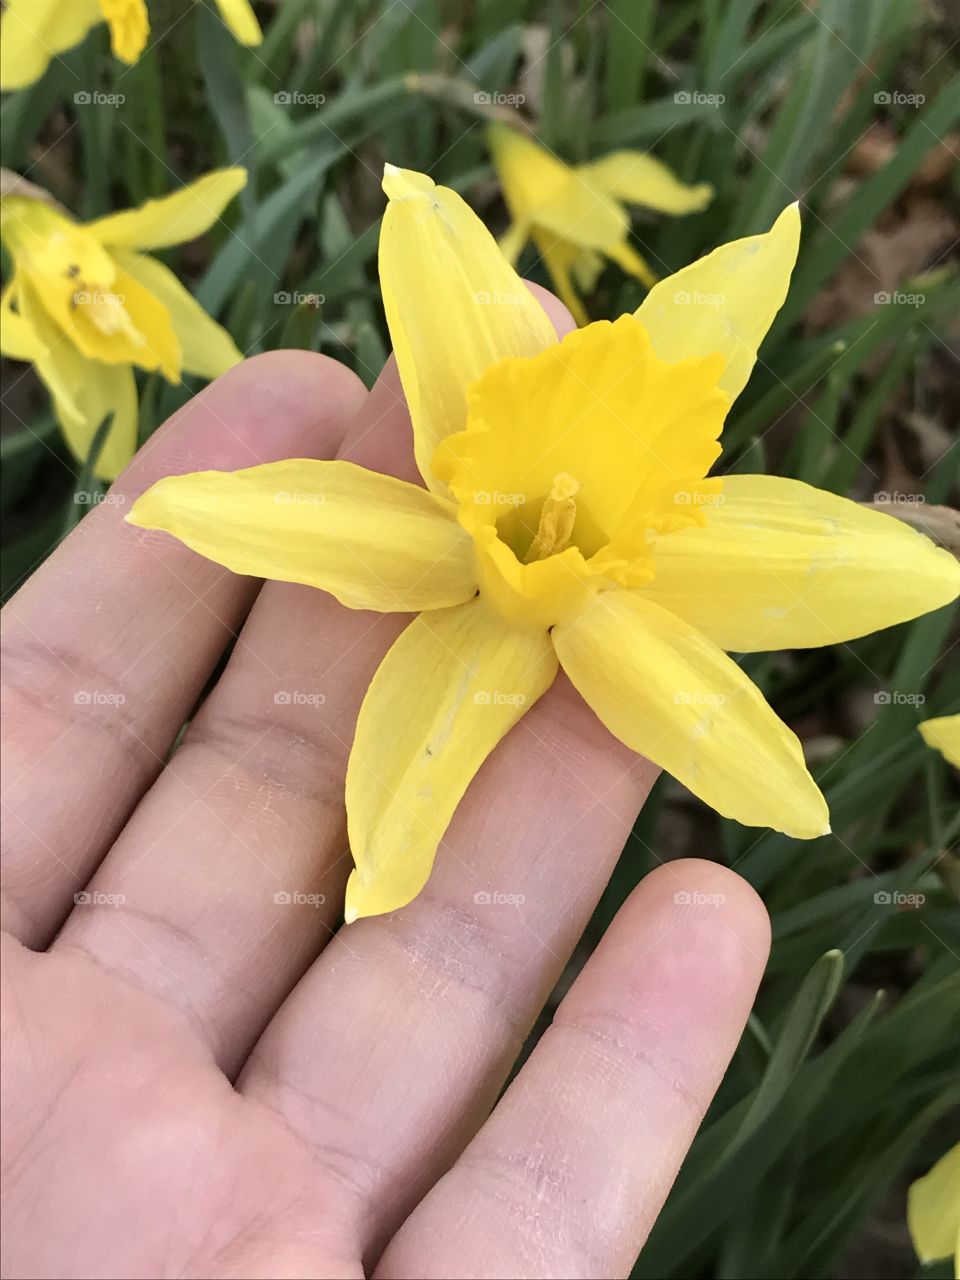 Daffodil
